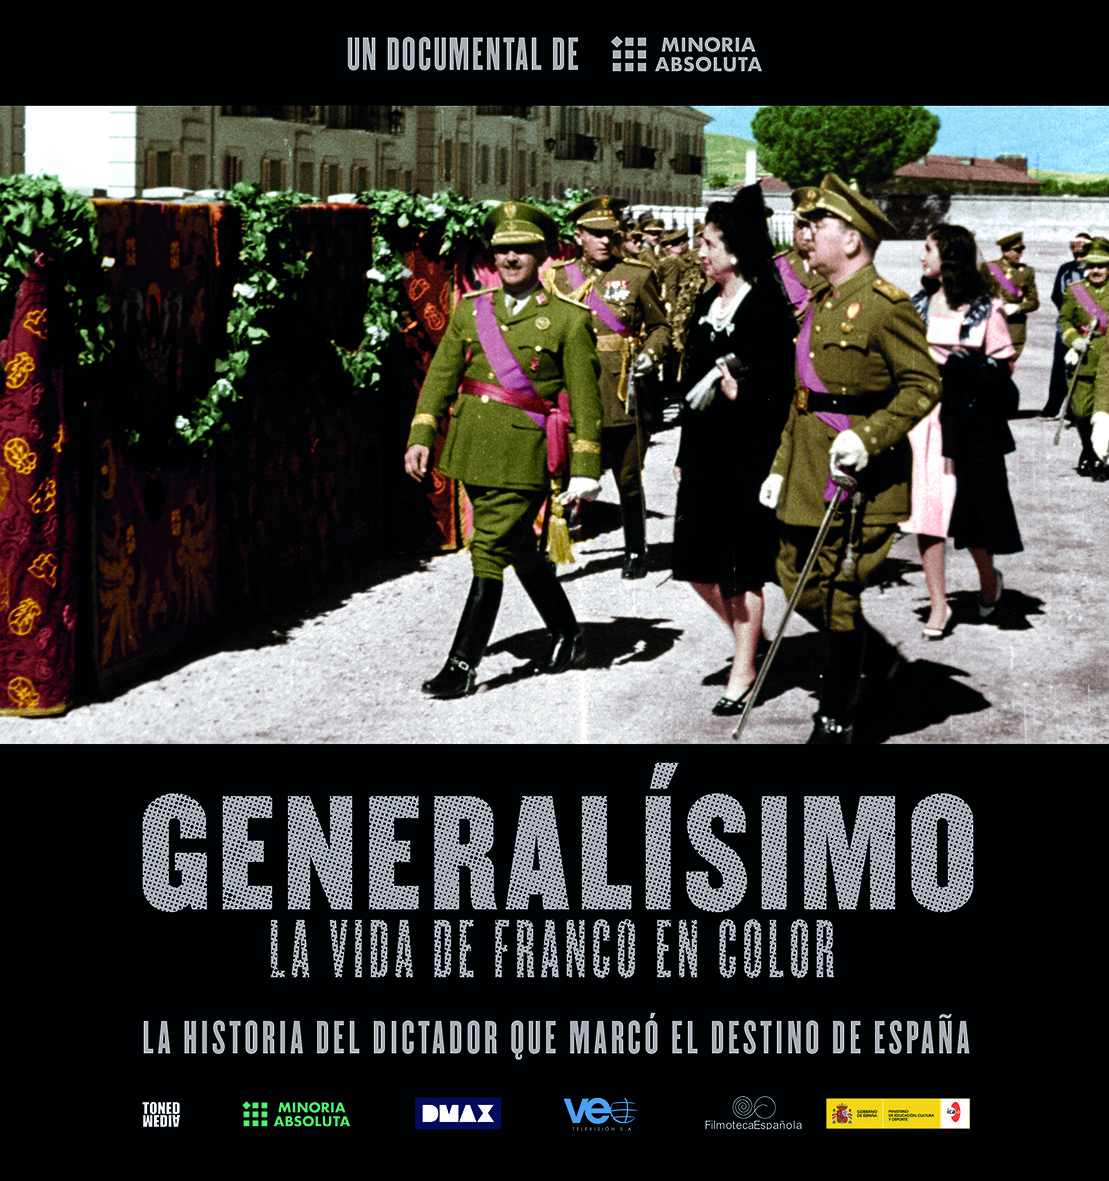 'Generalísimo' Still4 Franco Minoría Absoluta